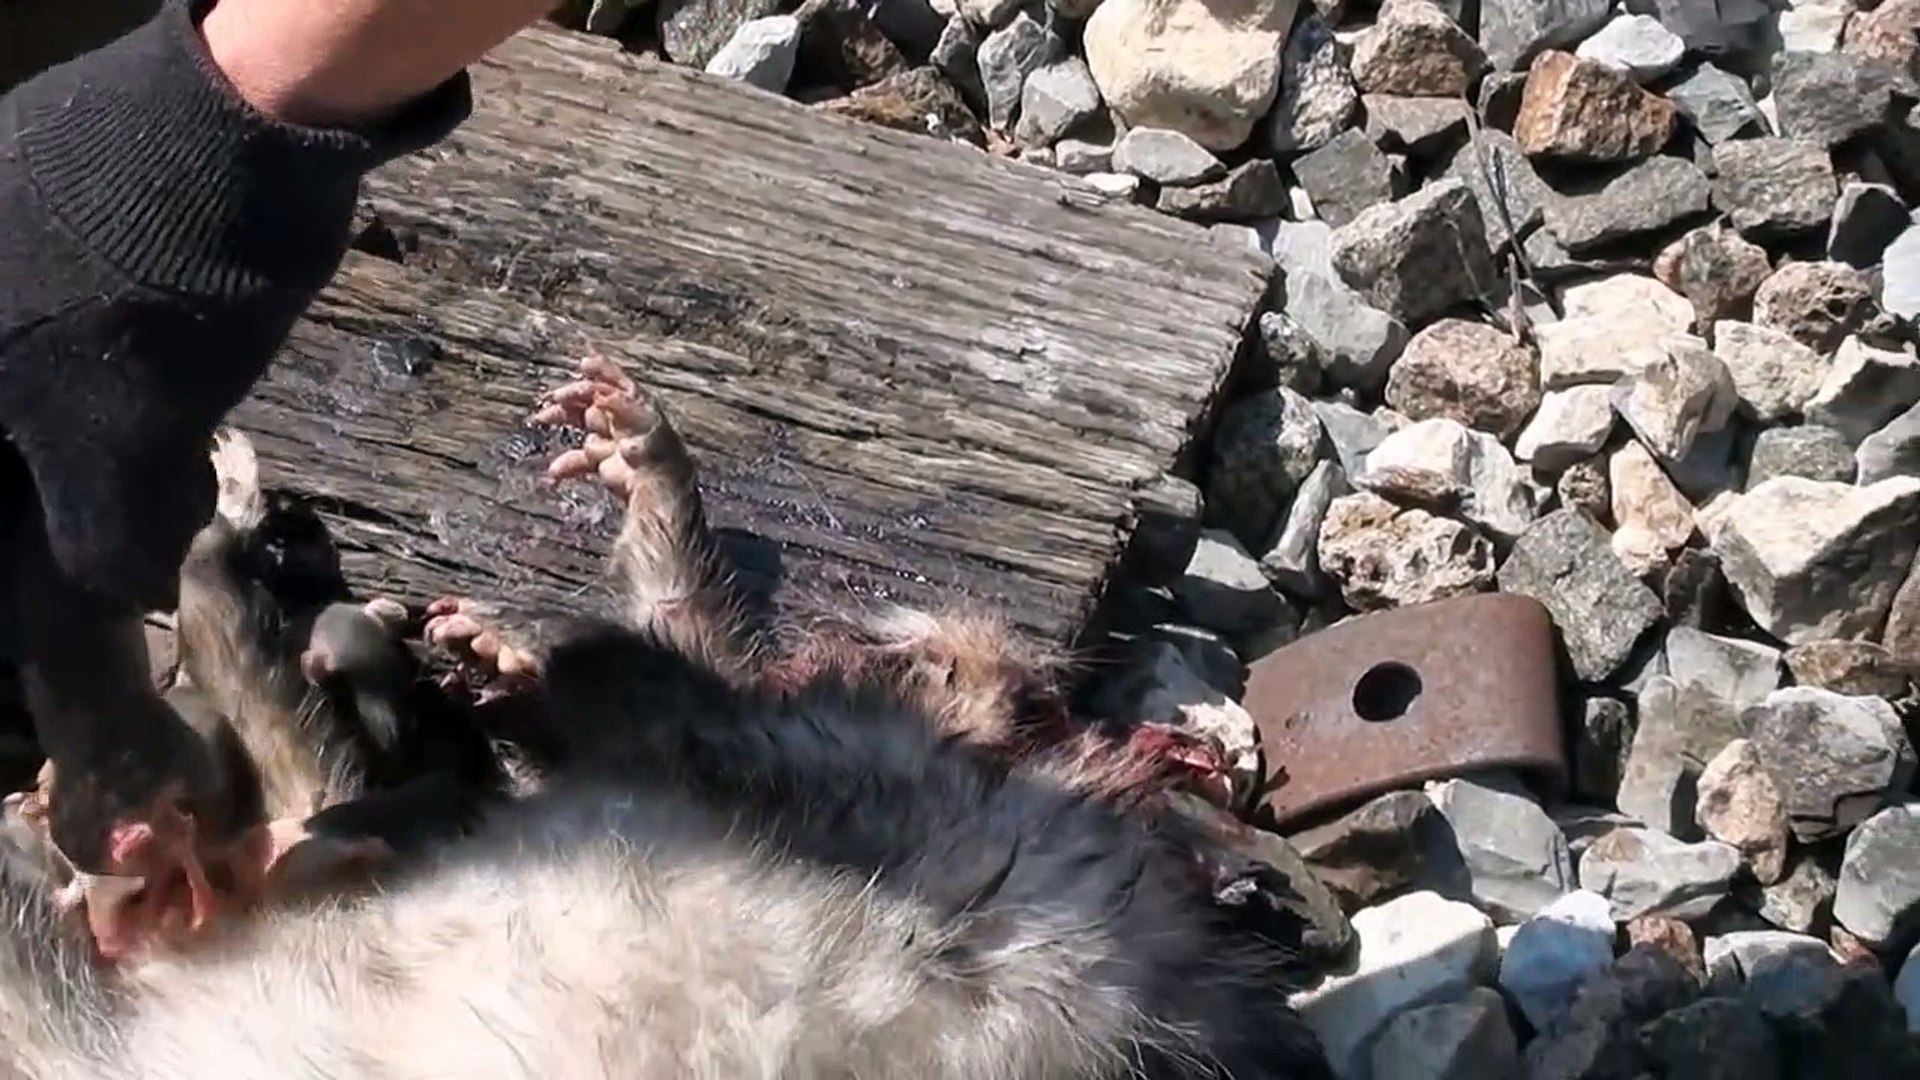 Il trouve 7 bébés opossum encore accrochés sur le ventre de leur maman morte et va les sauver